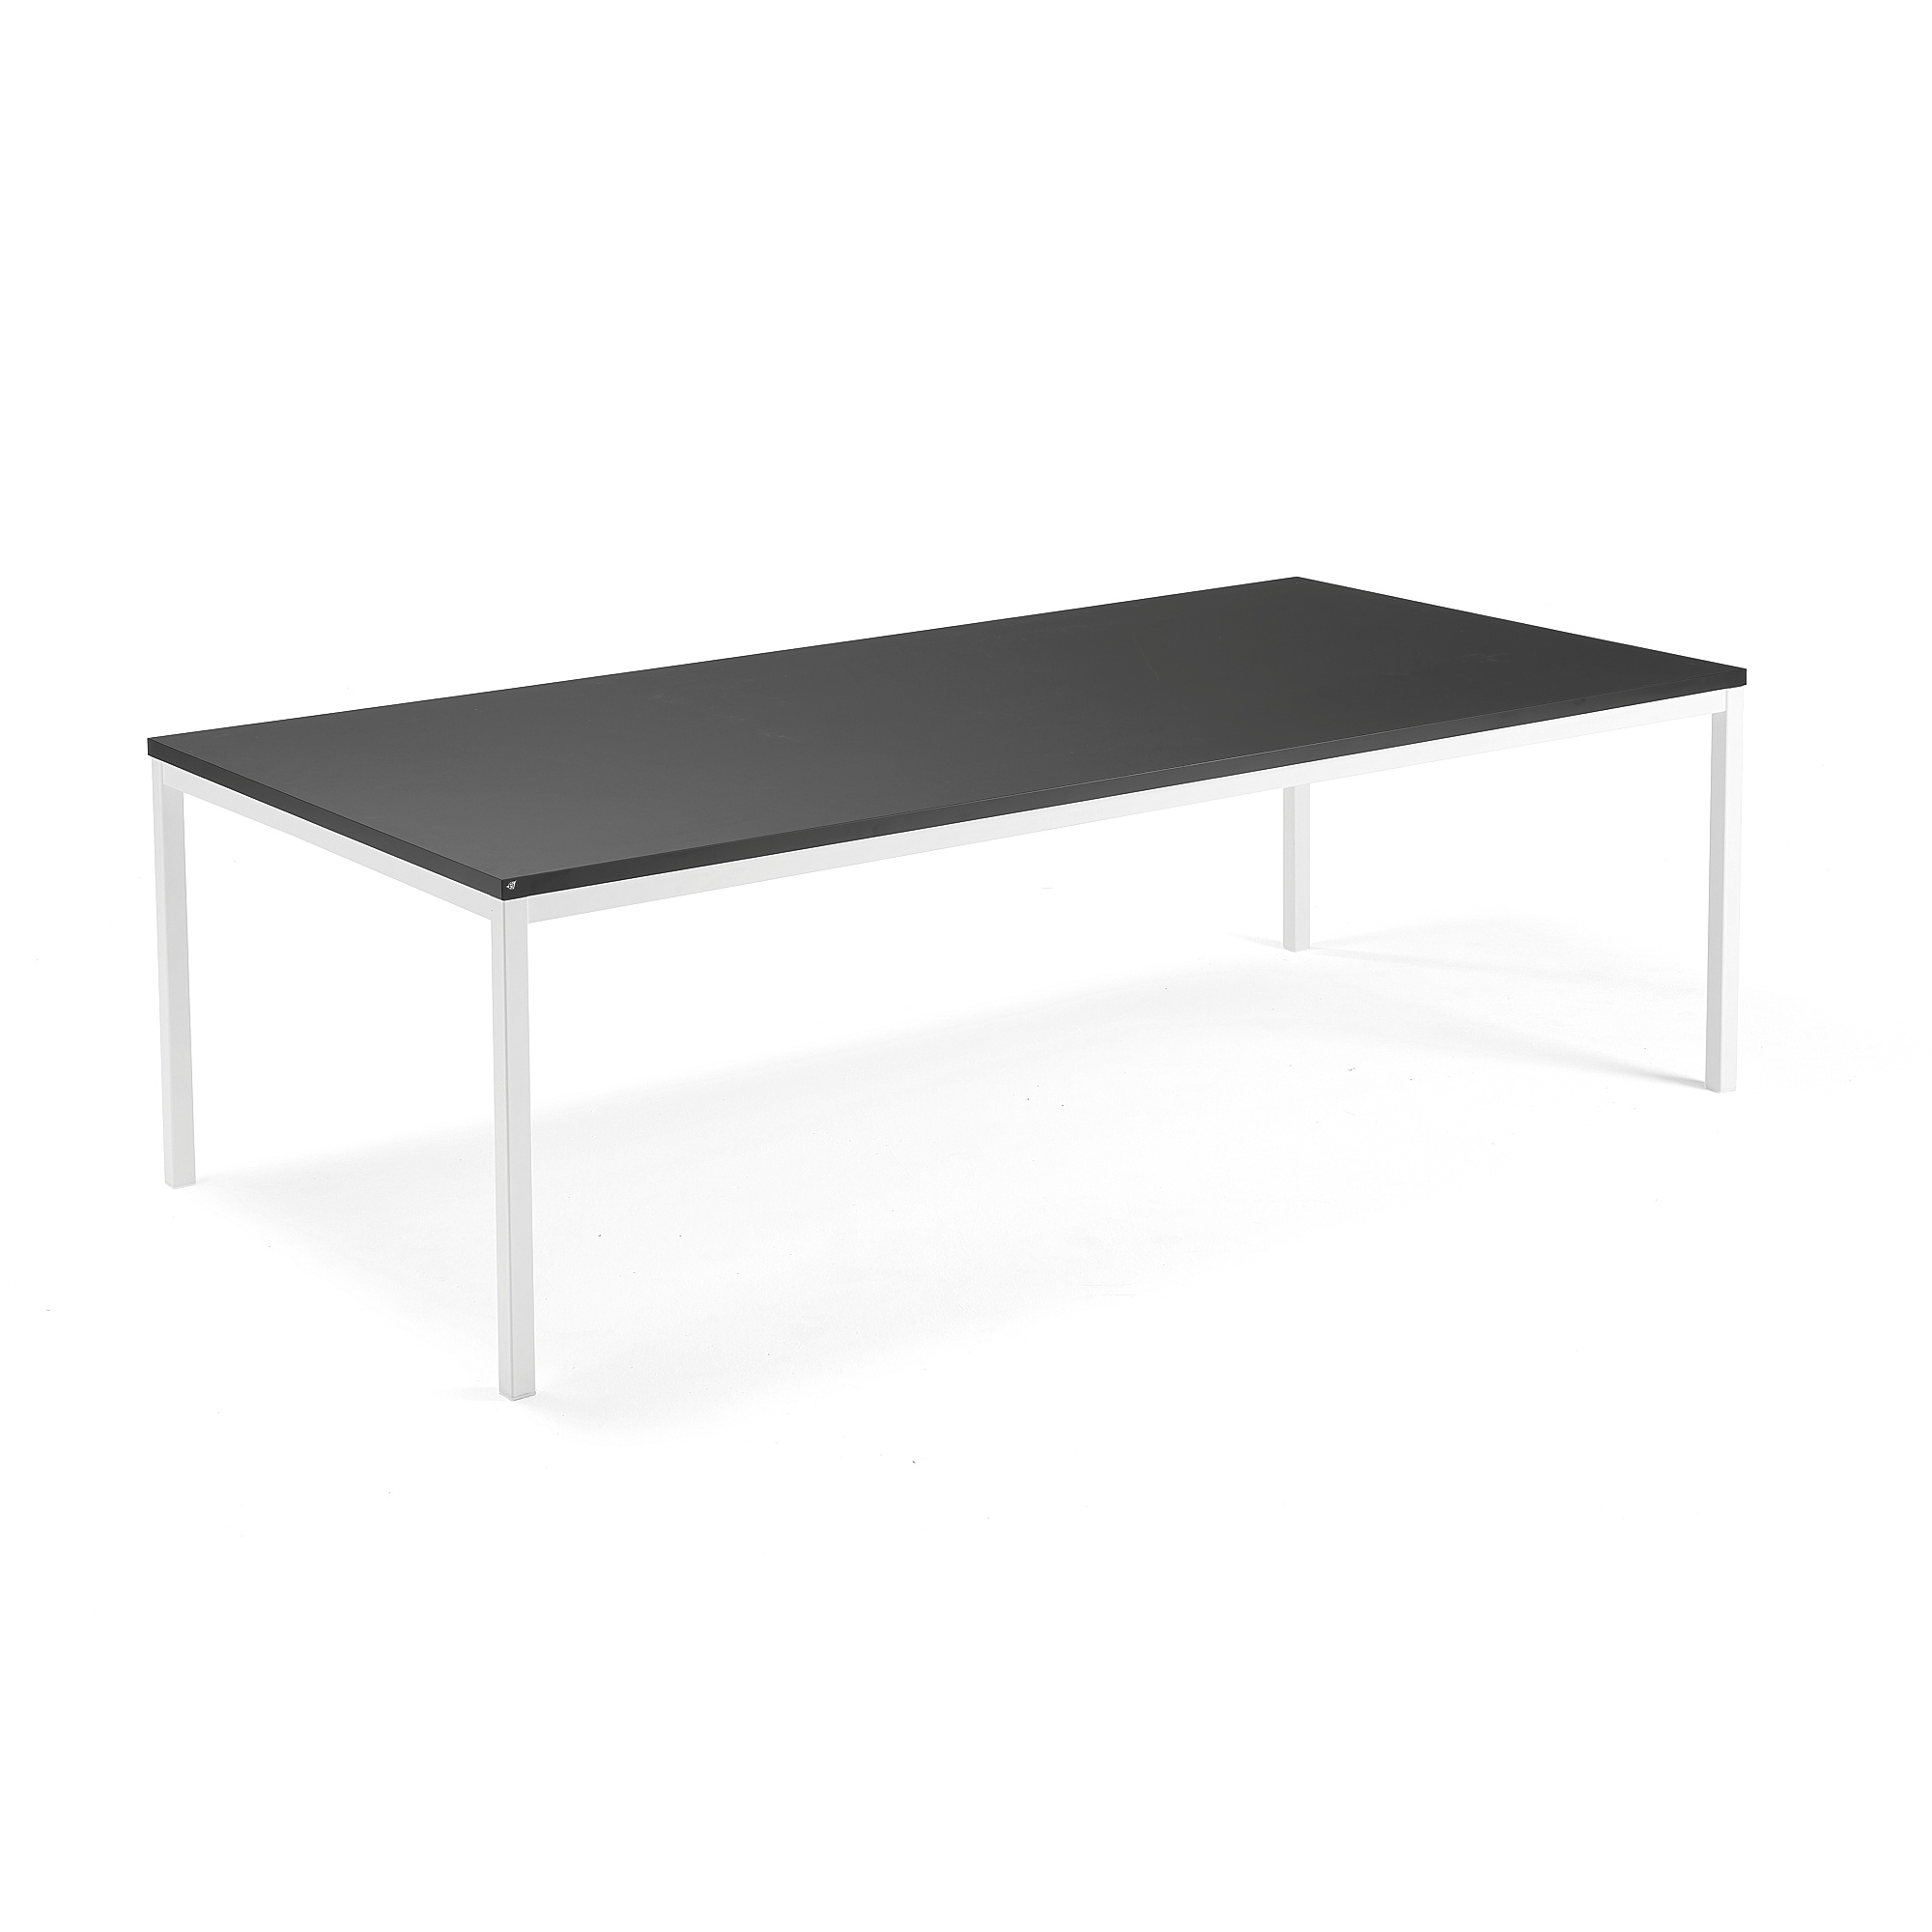 Jednací stůl QBUS, 2400x1200 mm, 4 nohy, bílý rám, černá